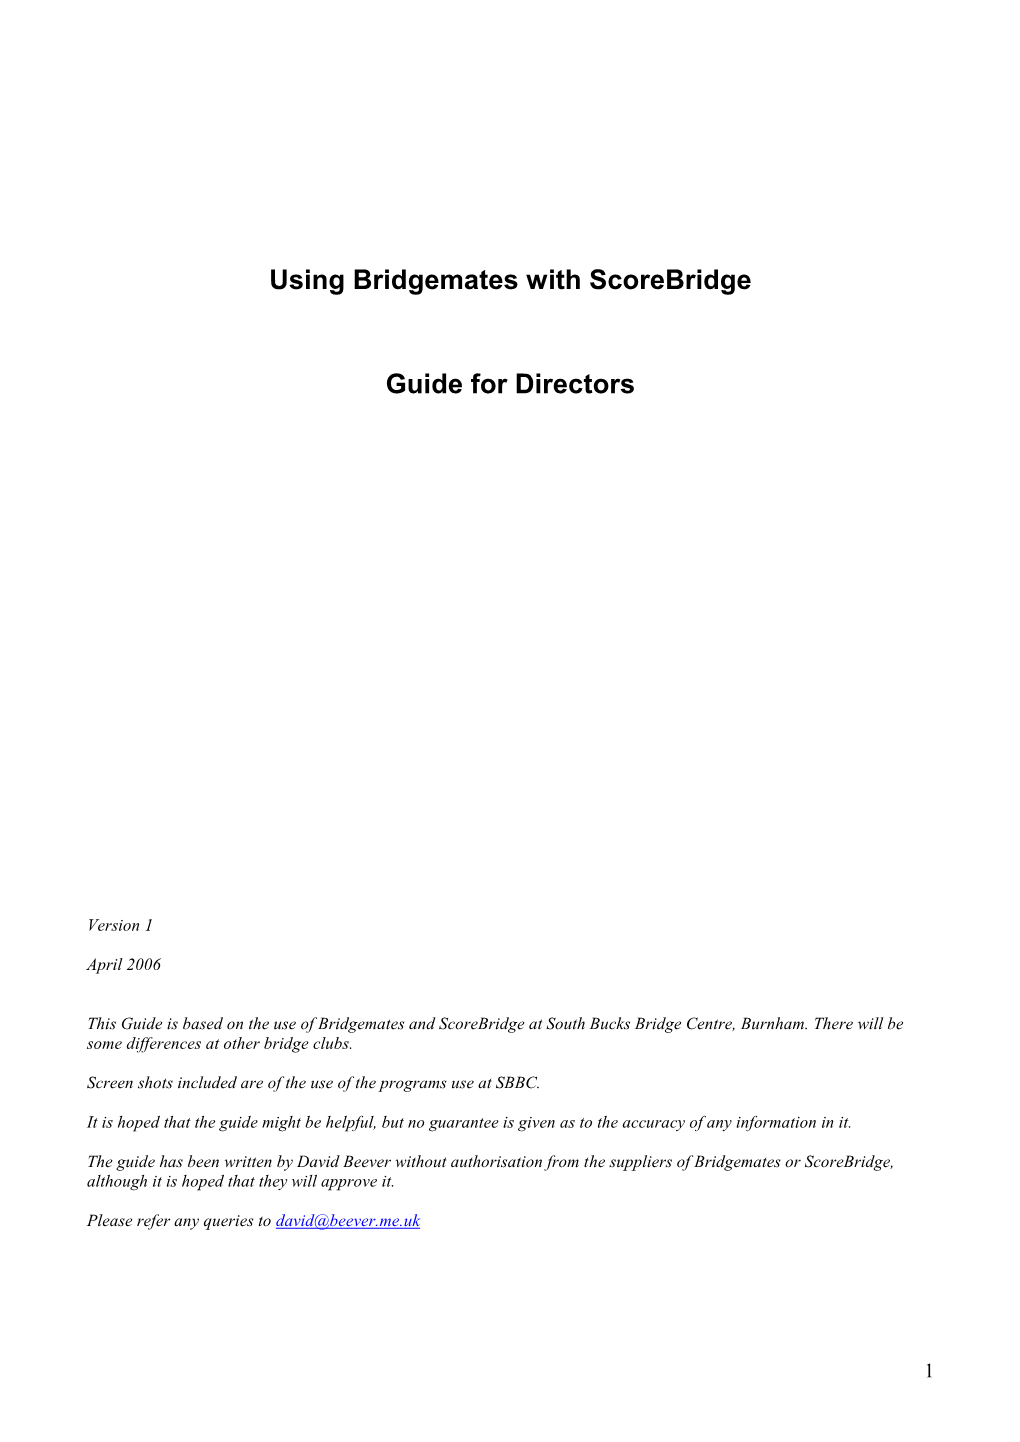 Using Bridgemates with Scorebridge Guide for Directors